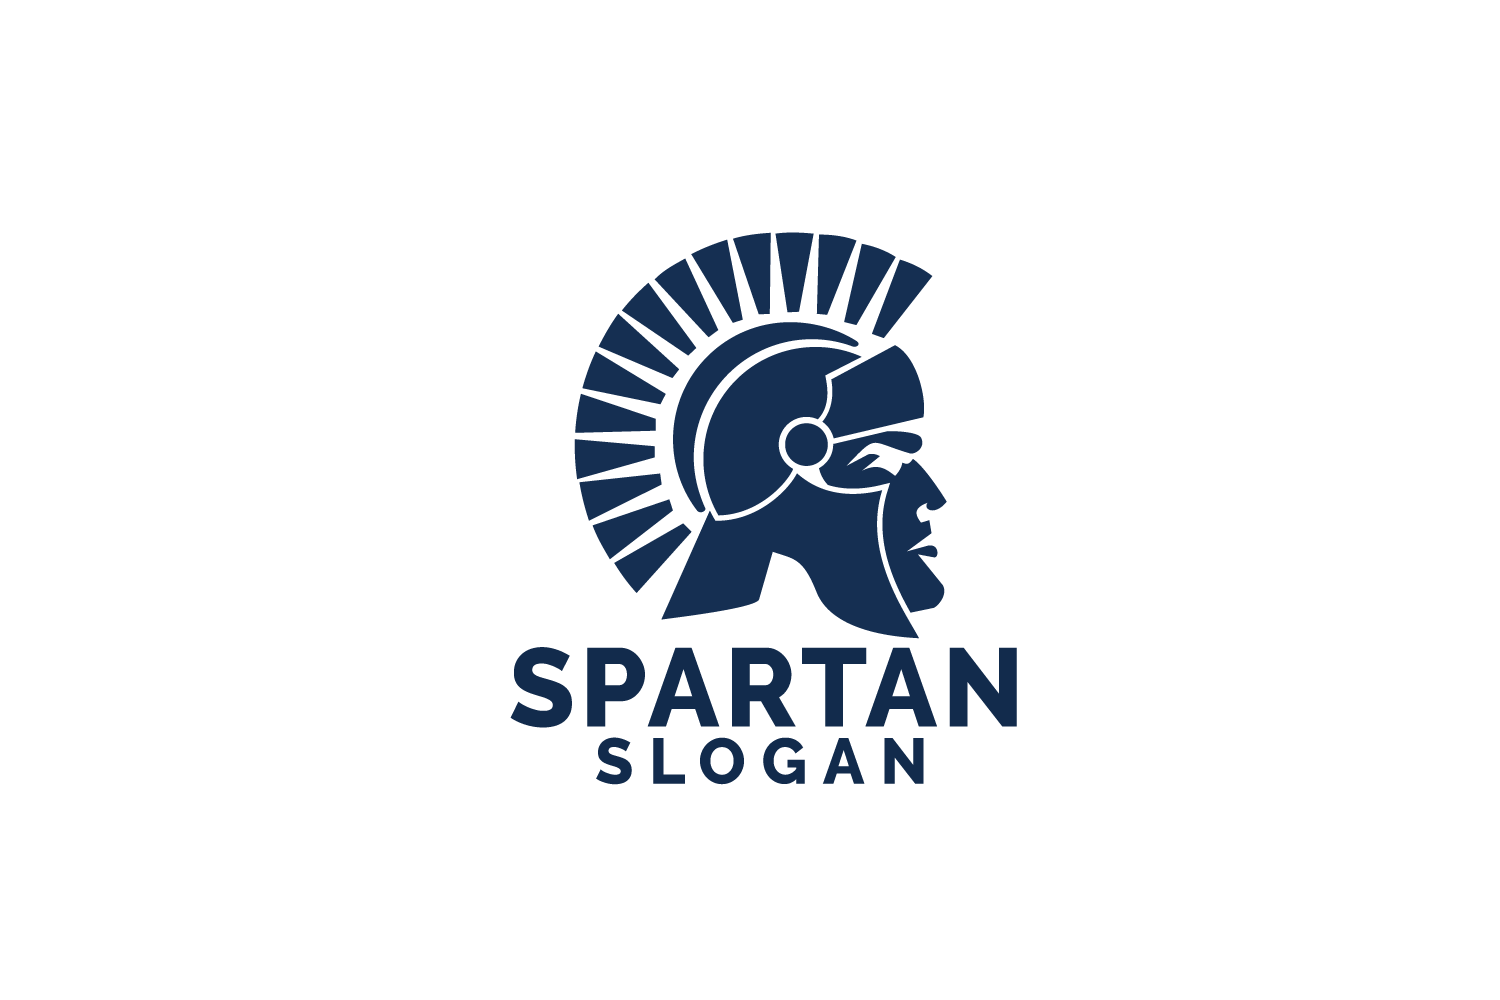 Sparten Logo - Spartan logo design. Antiques Spartan warrior vector design.